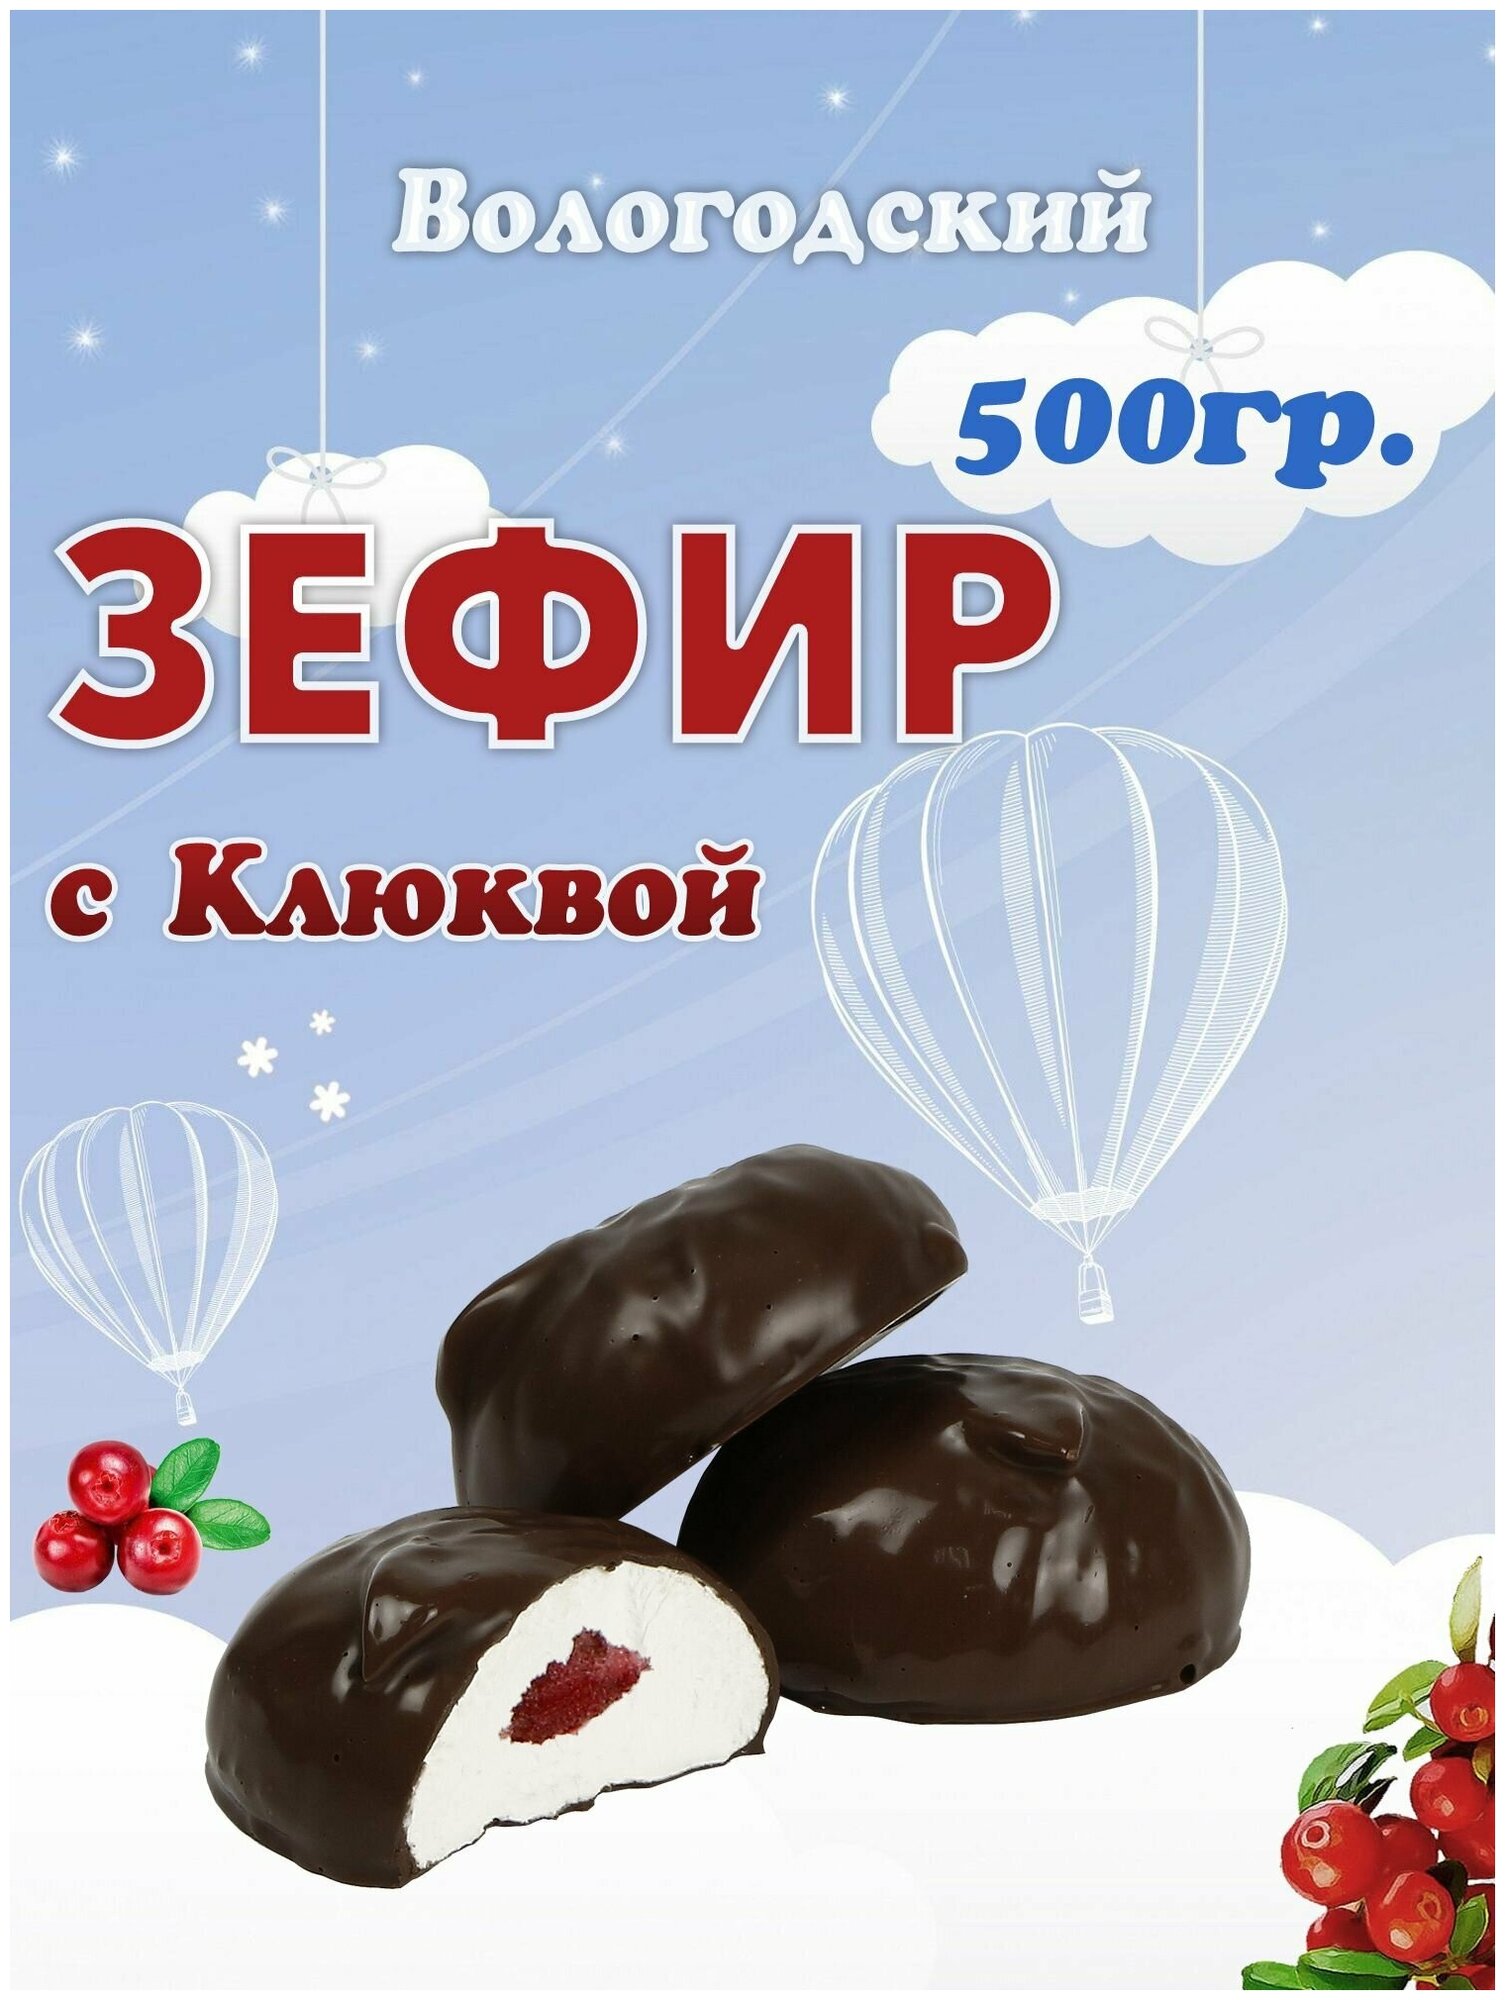 Зефир Вологодский в шоколаде с Клюквой 500гр.